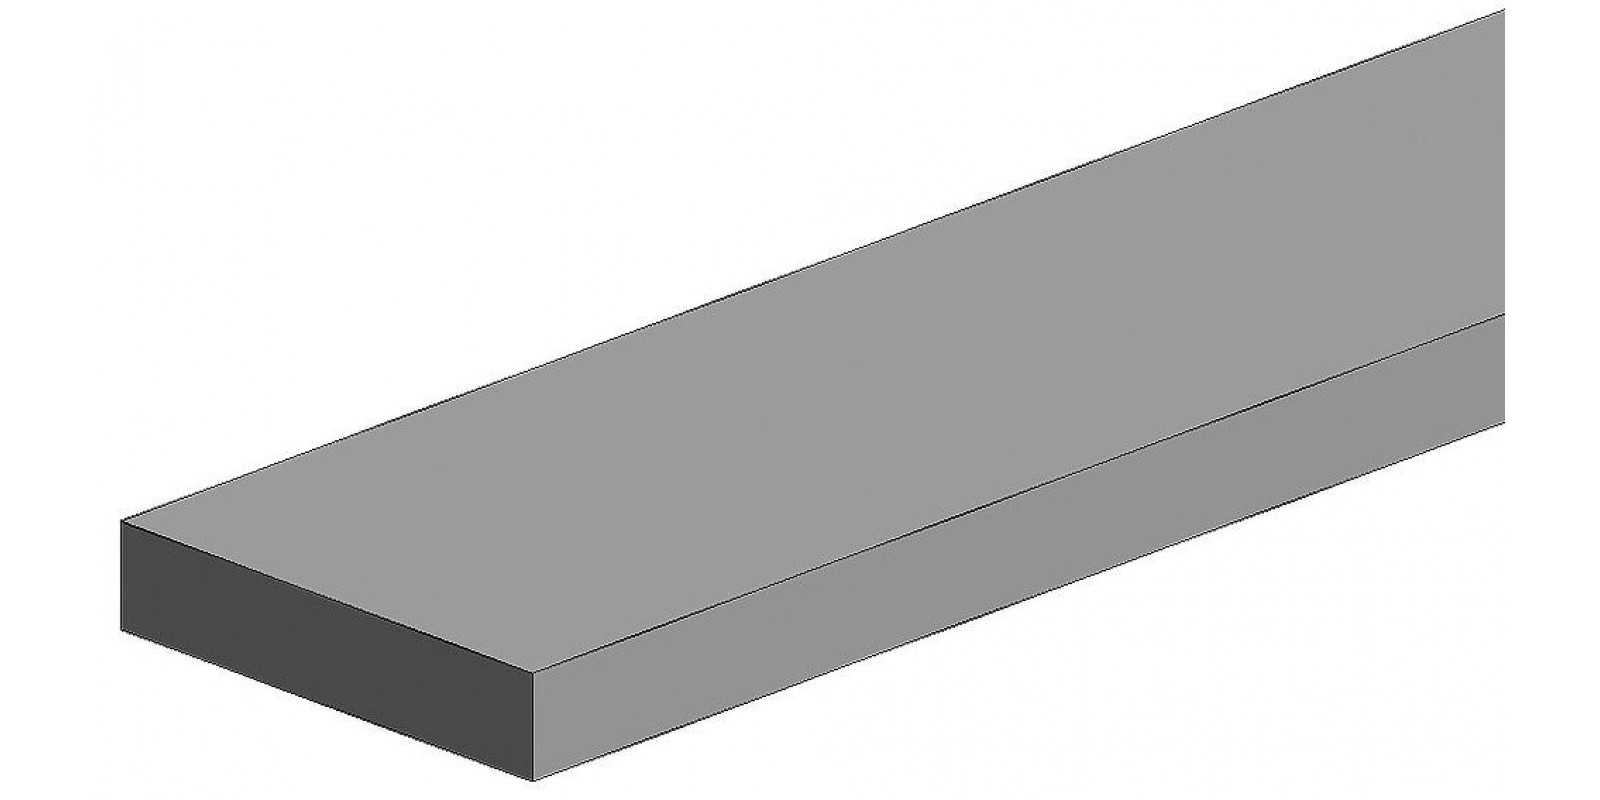 FA500178 White polystyrene square profile